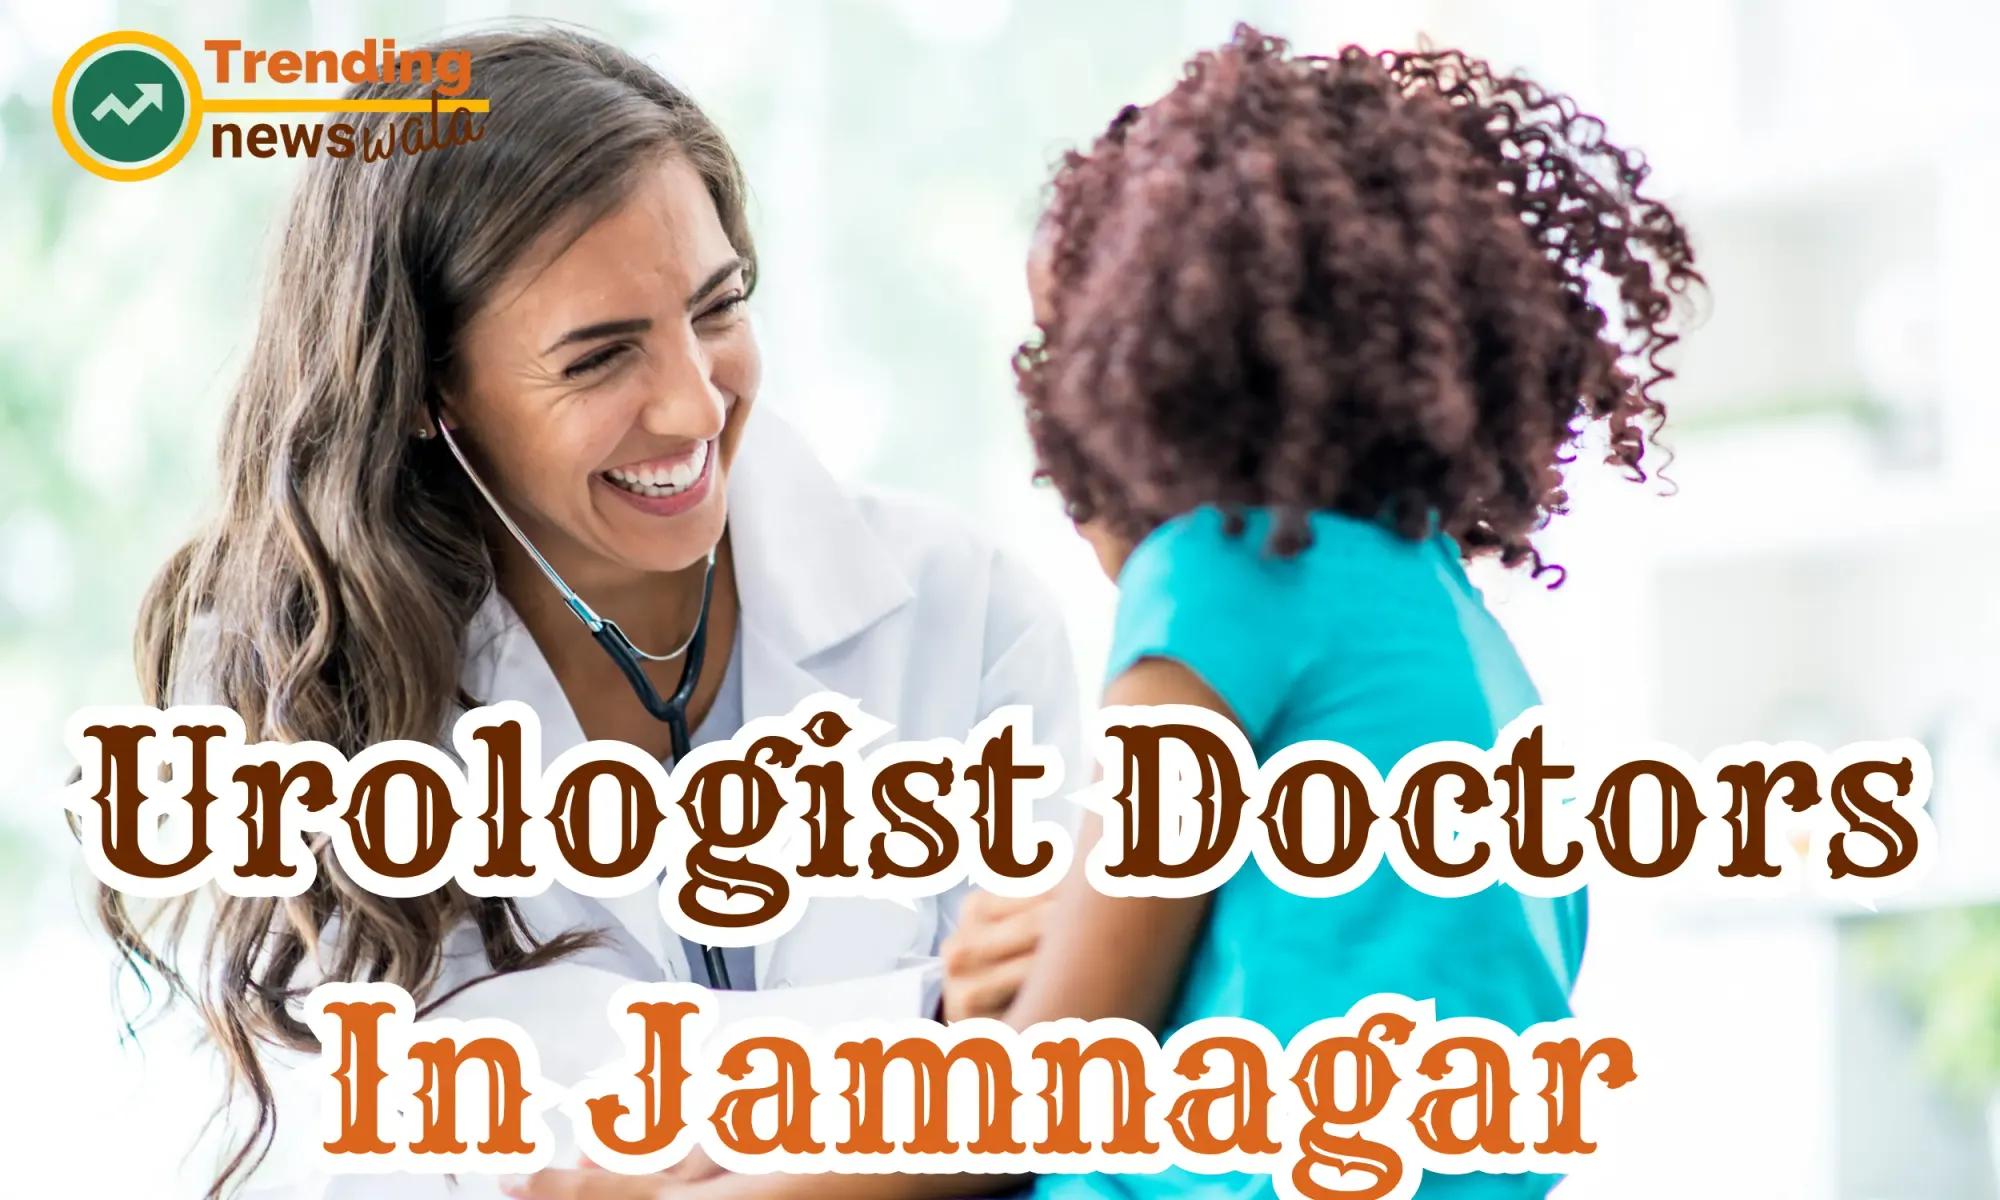 Urologist Doctors in Jamnagar